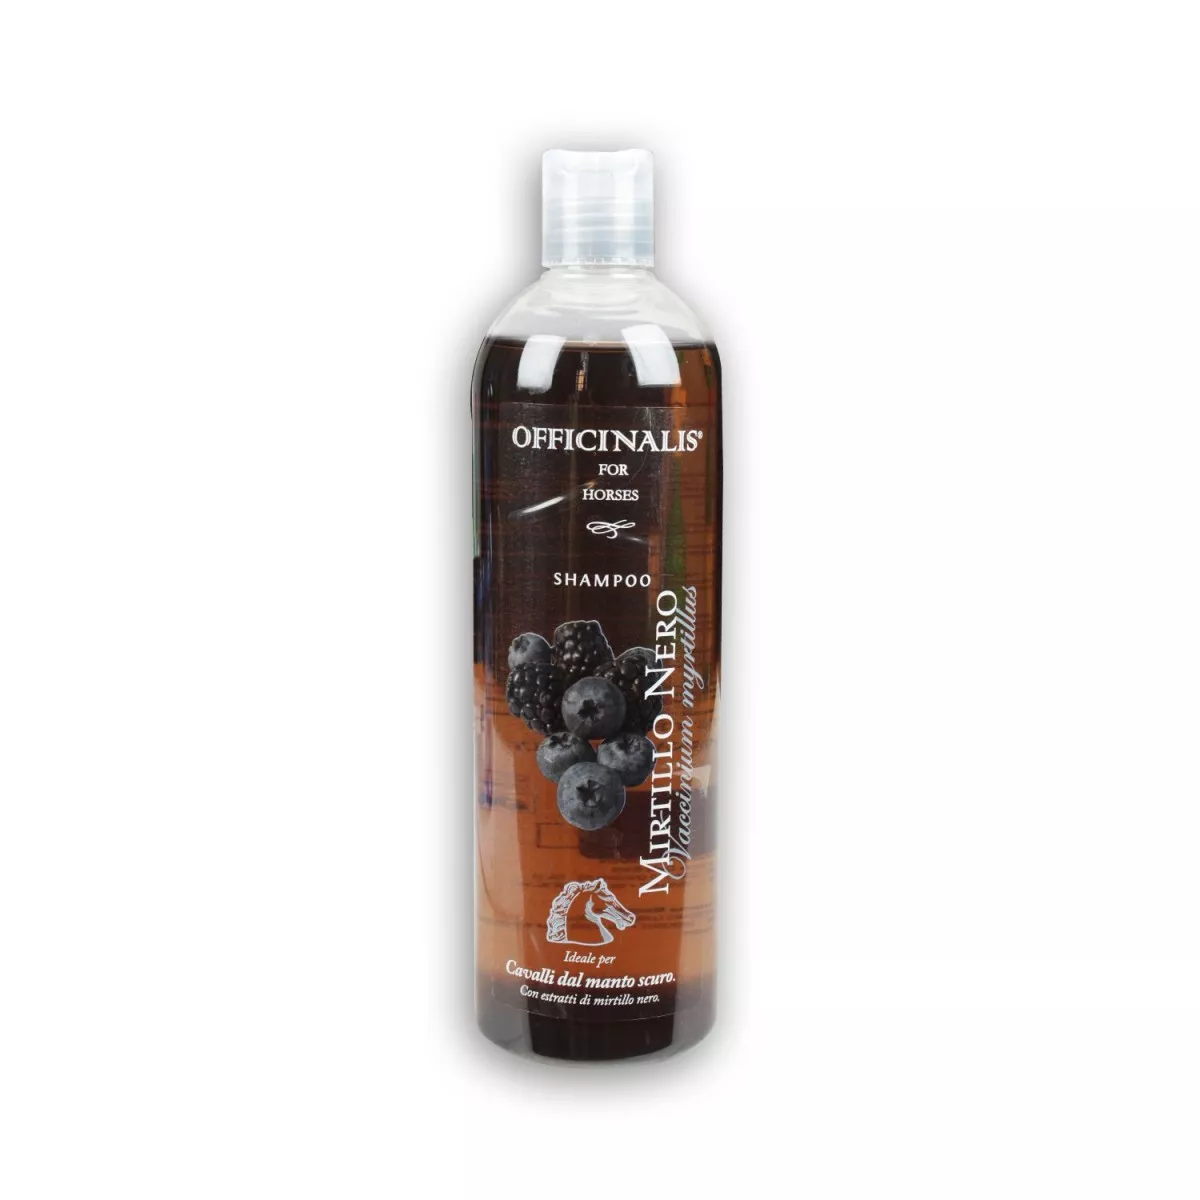 Shampoo MIRTILLO NERO - für dunkle Pferde, 500 ml